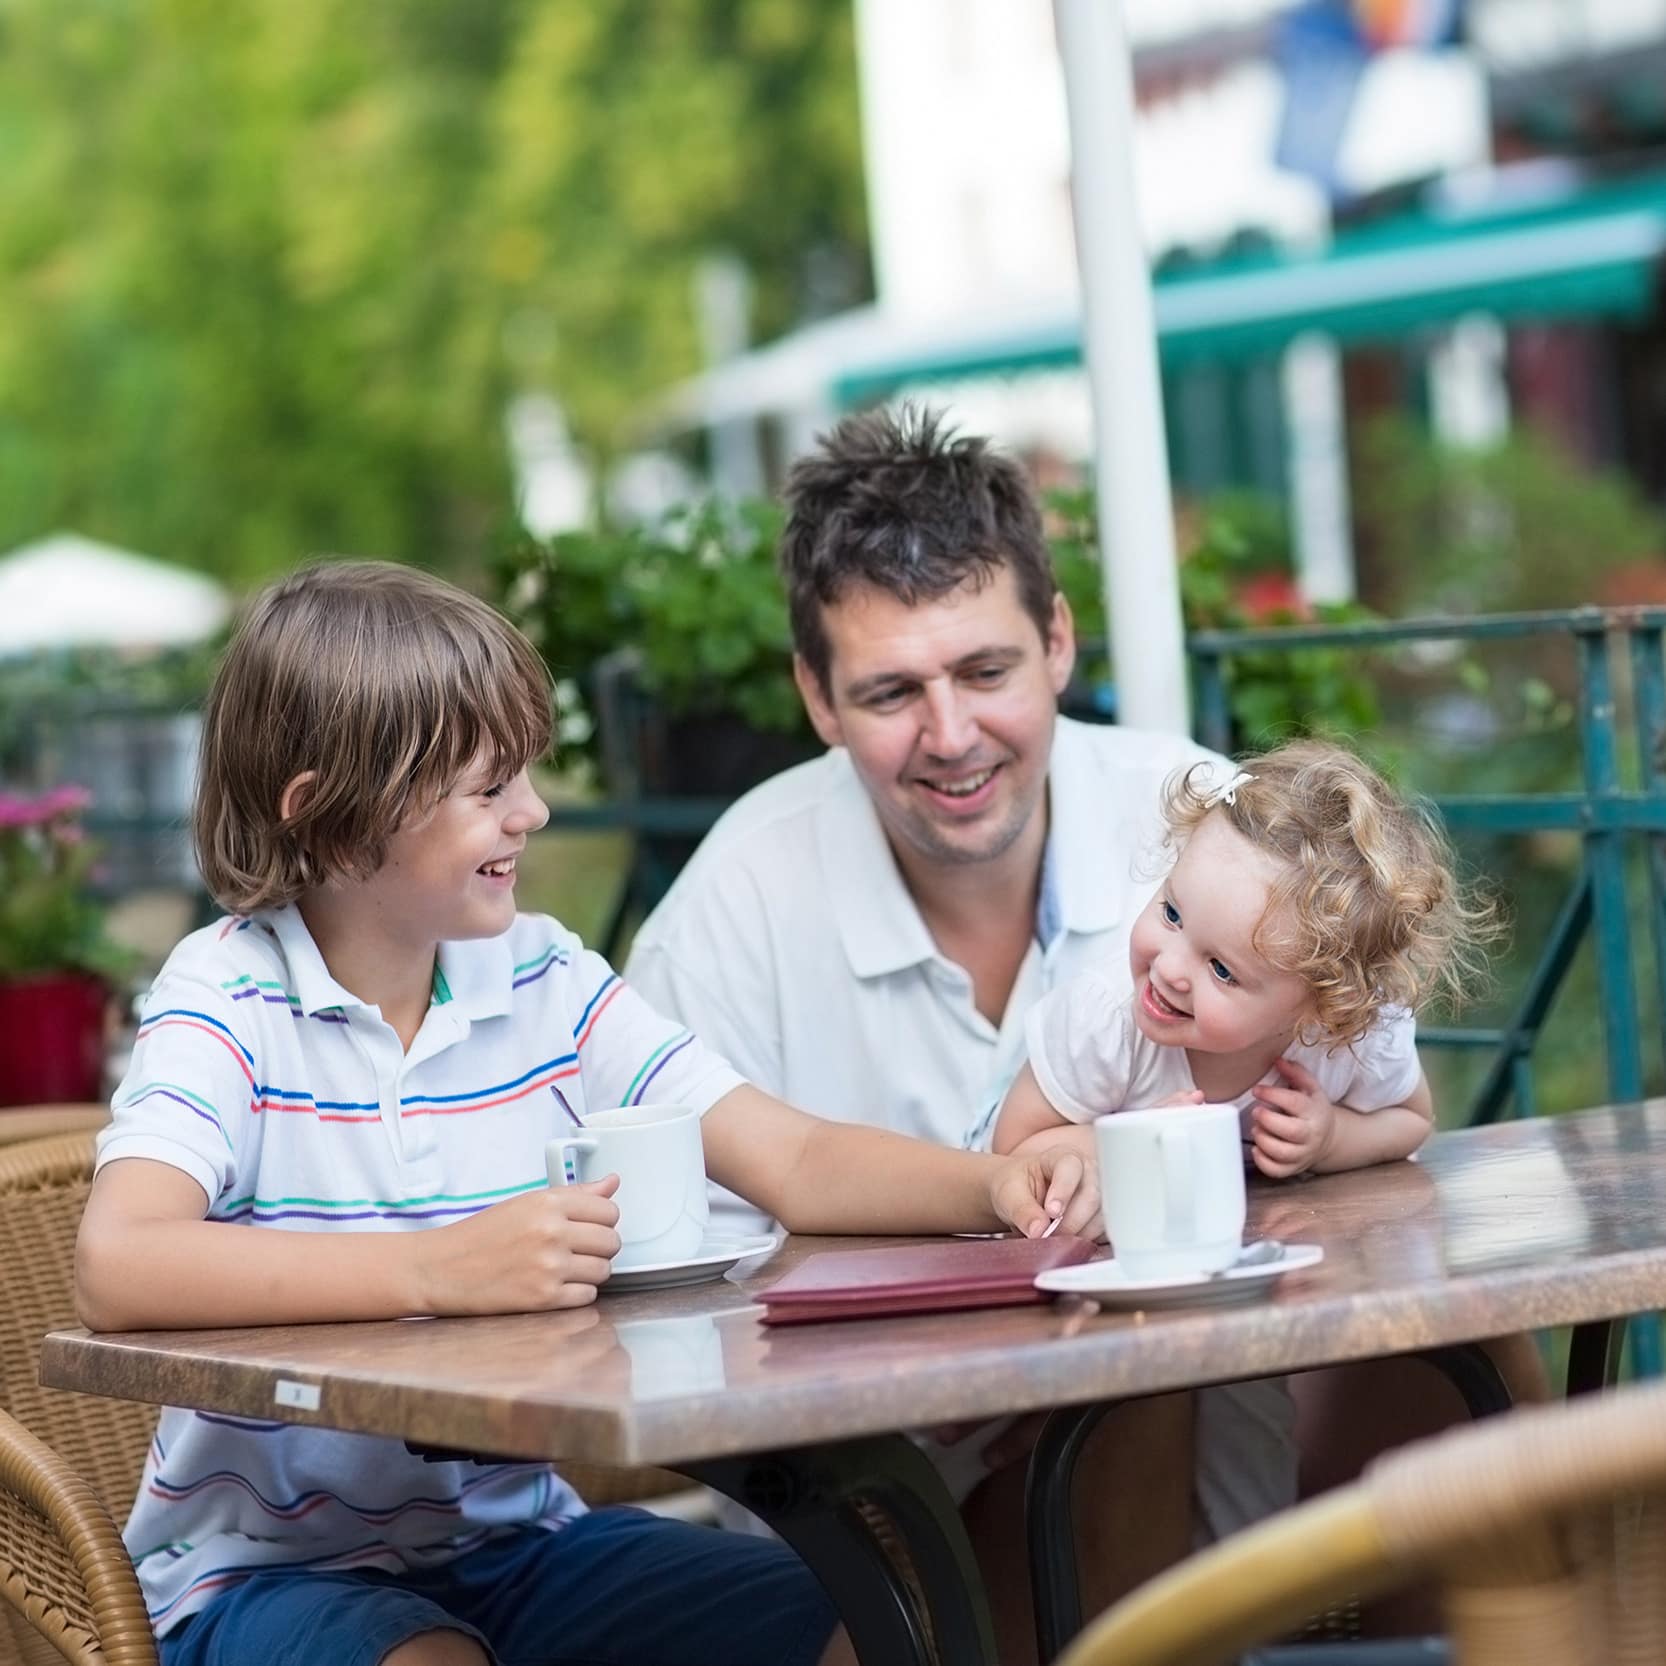 Vater, Sohn und Kleinkind an einem Gartentisch in einem Restaurant. Rechts steht ein Glas Bier.